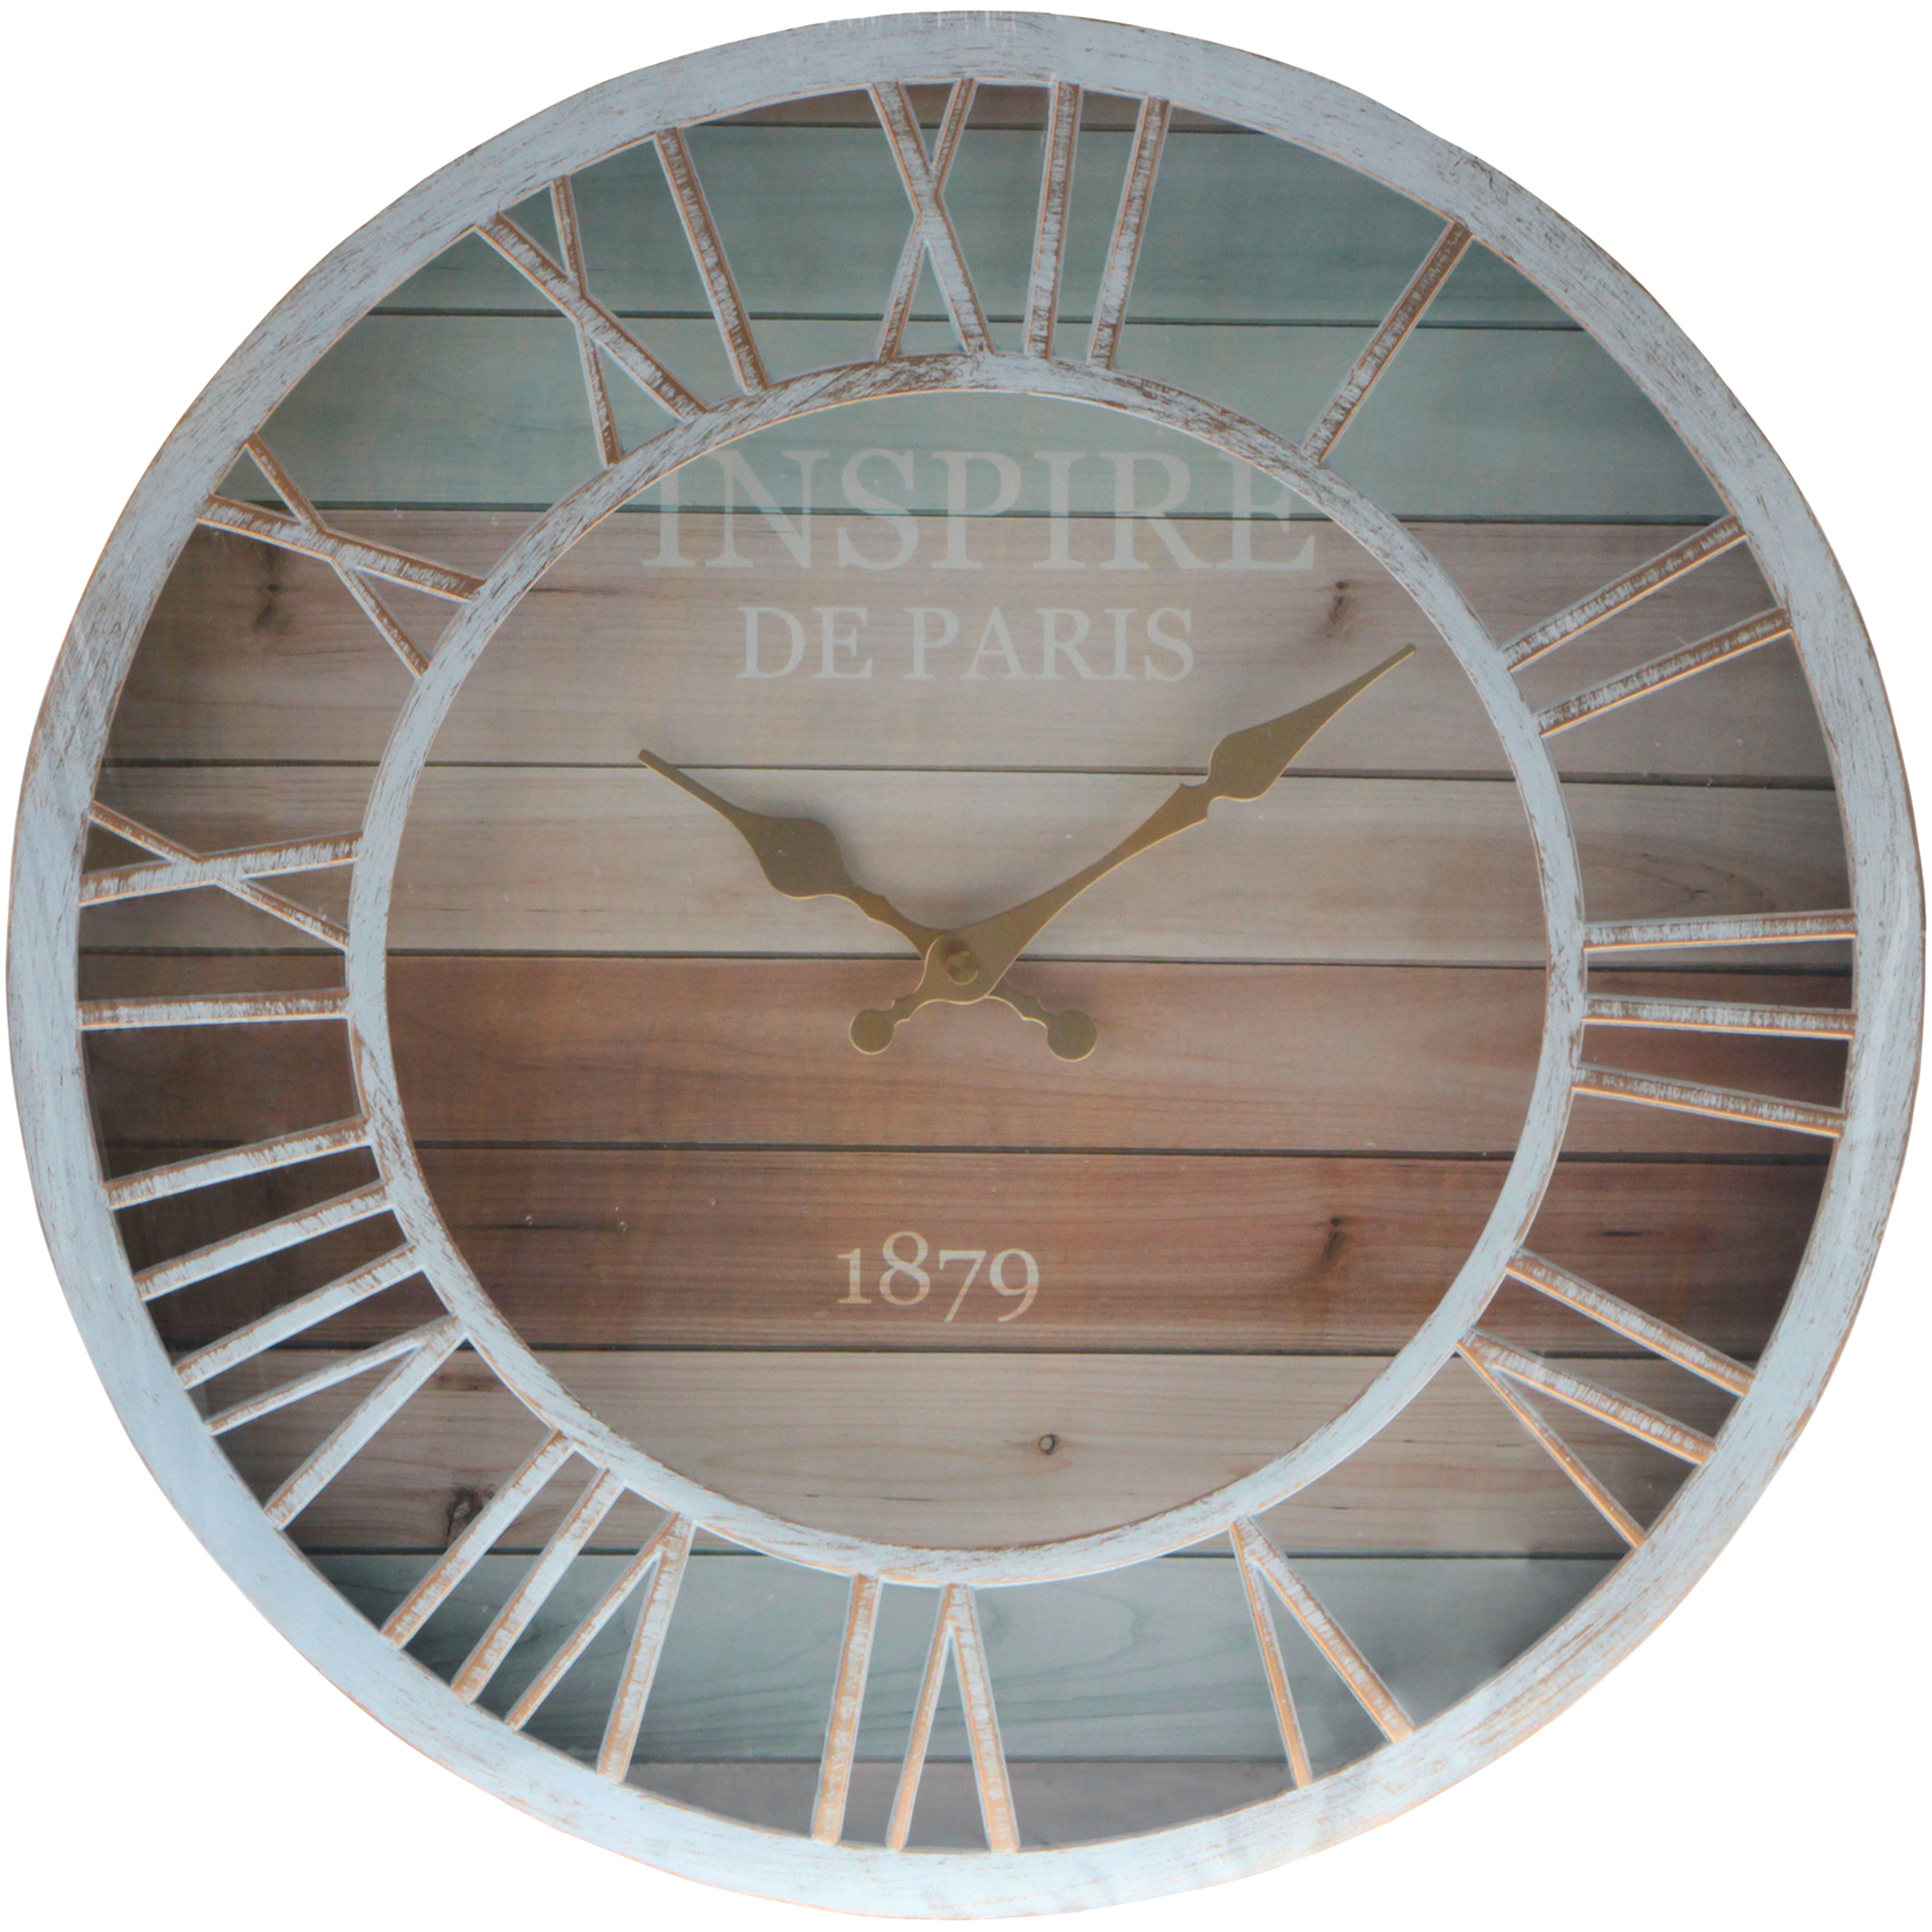 Настенные часы Kanglijia Clock декоративные 40,6х40,6х5,2 см часы электронные настенные настольные будильник термометр календарь d 30 см